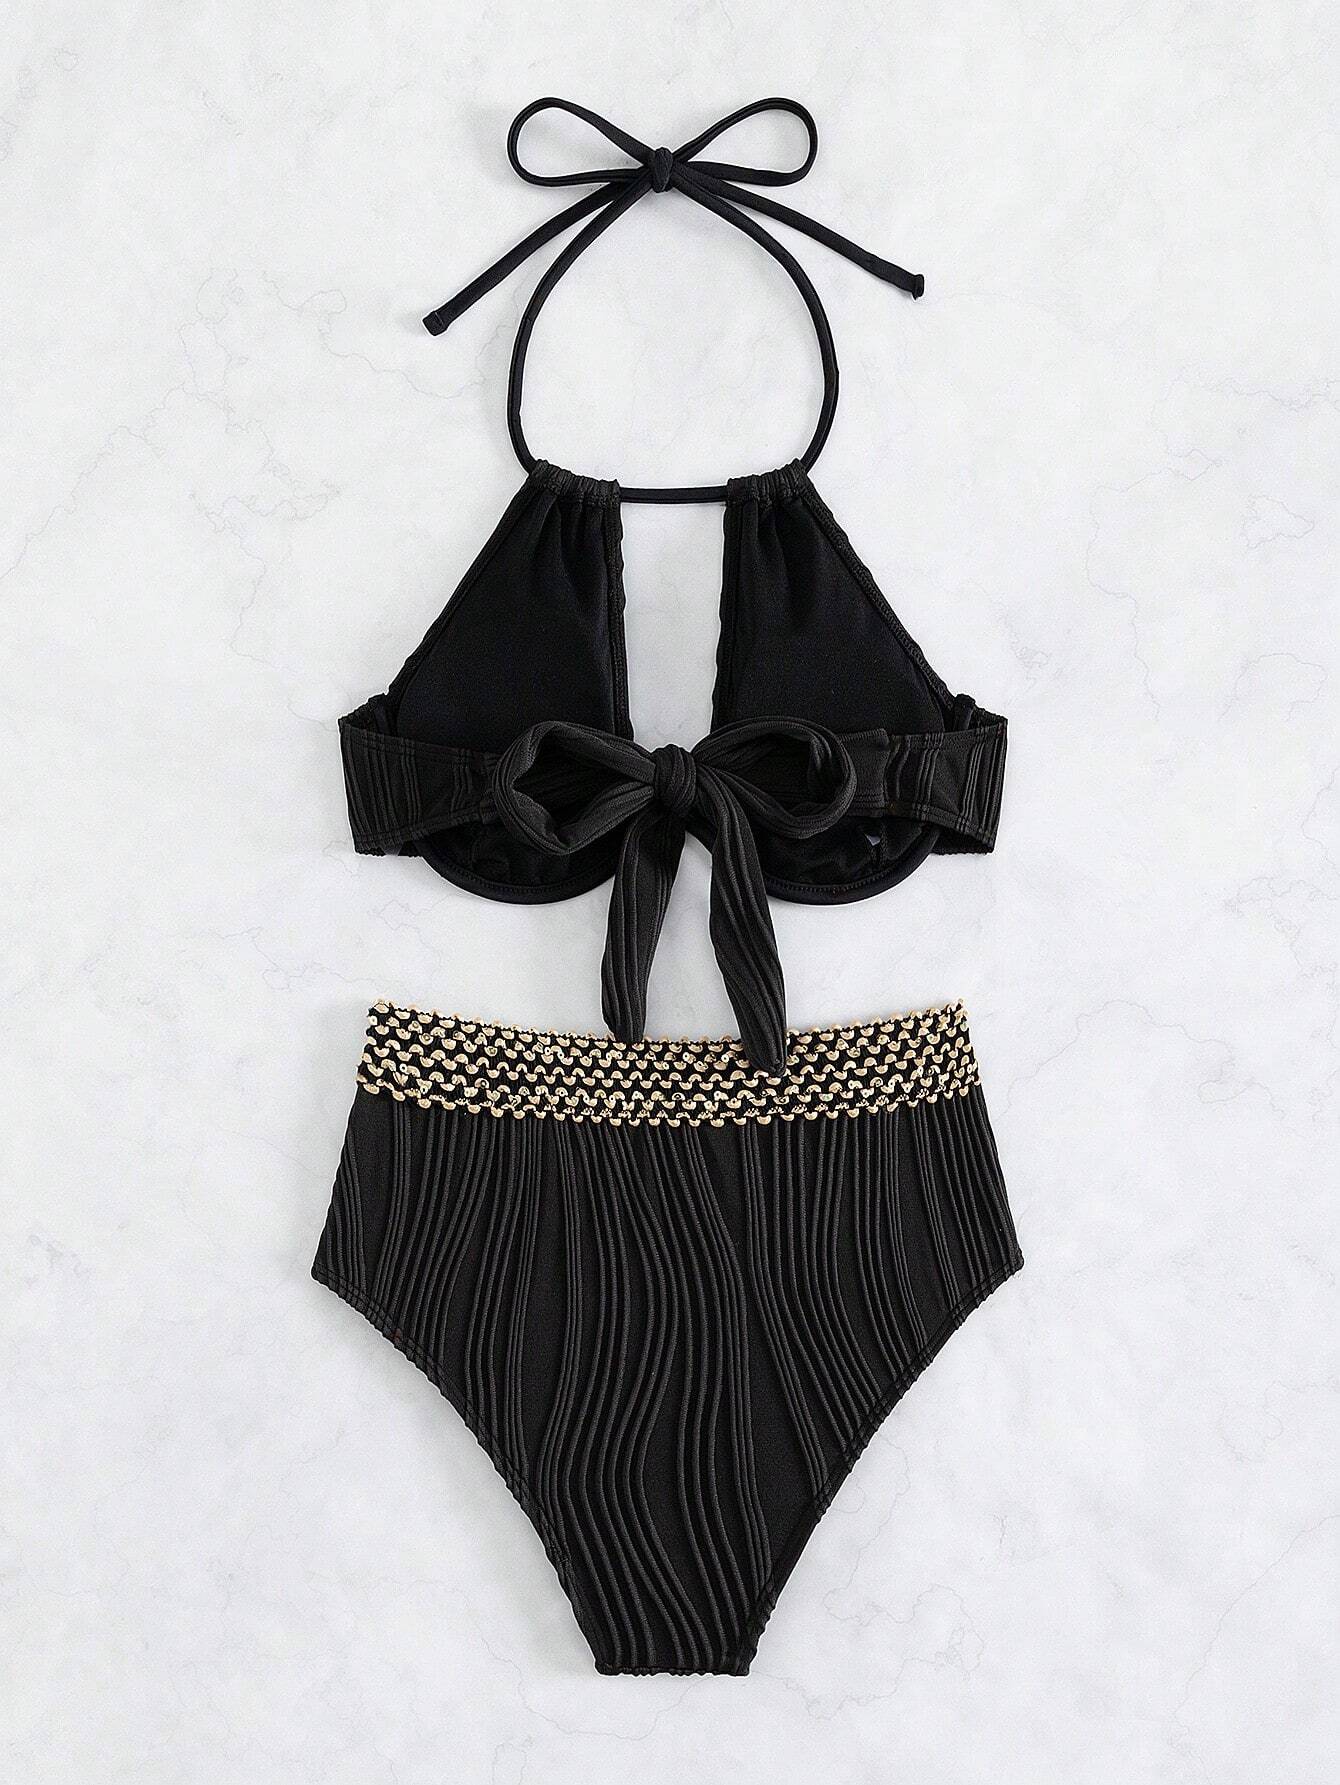 Black Textured & Gold Stitch Detail Halter Underwire Bikini Set